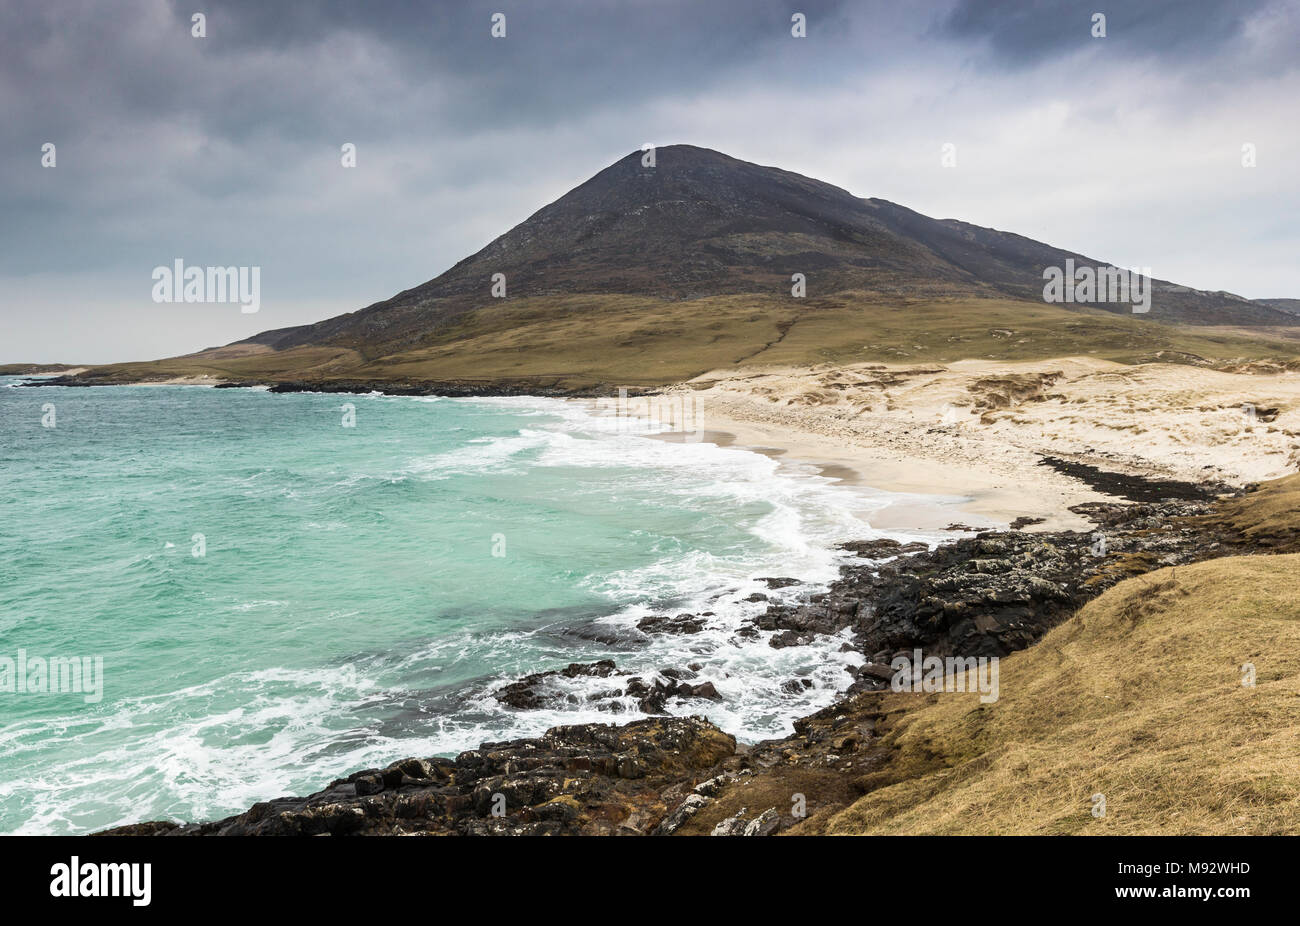 Traigh eine Taoibh Thuath auf der Isle of Harris auf den Äußeren Hebriden. Stockfoto